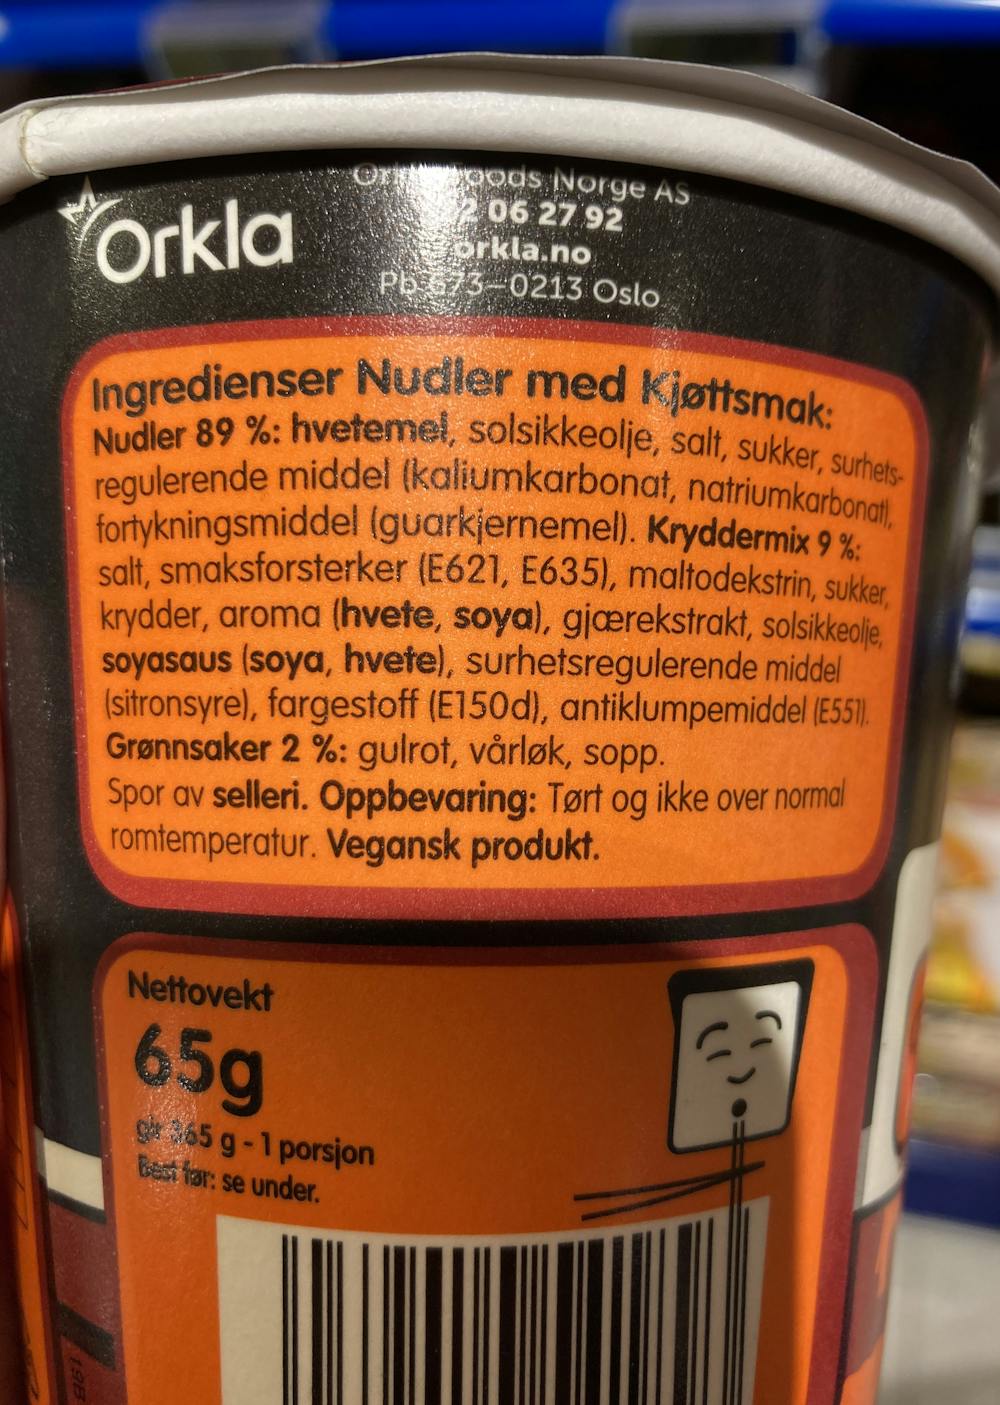 Ingredienslisten til Nudler med kjøttsmak, Mr. Lee